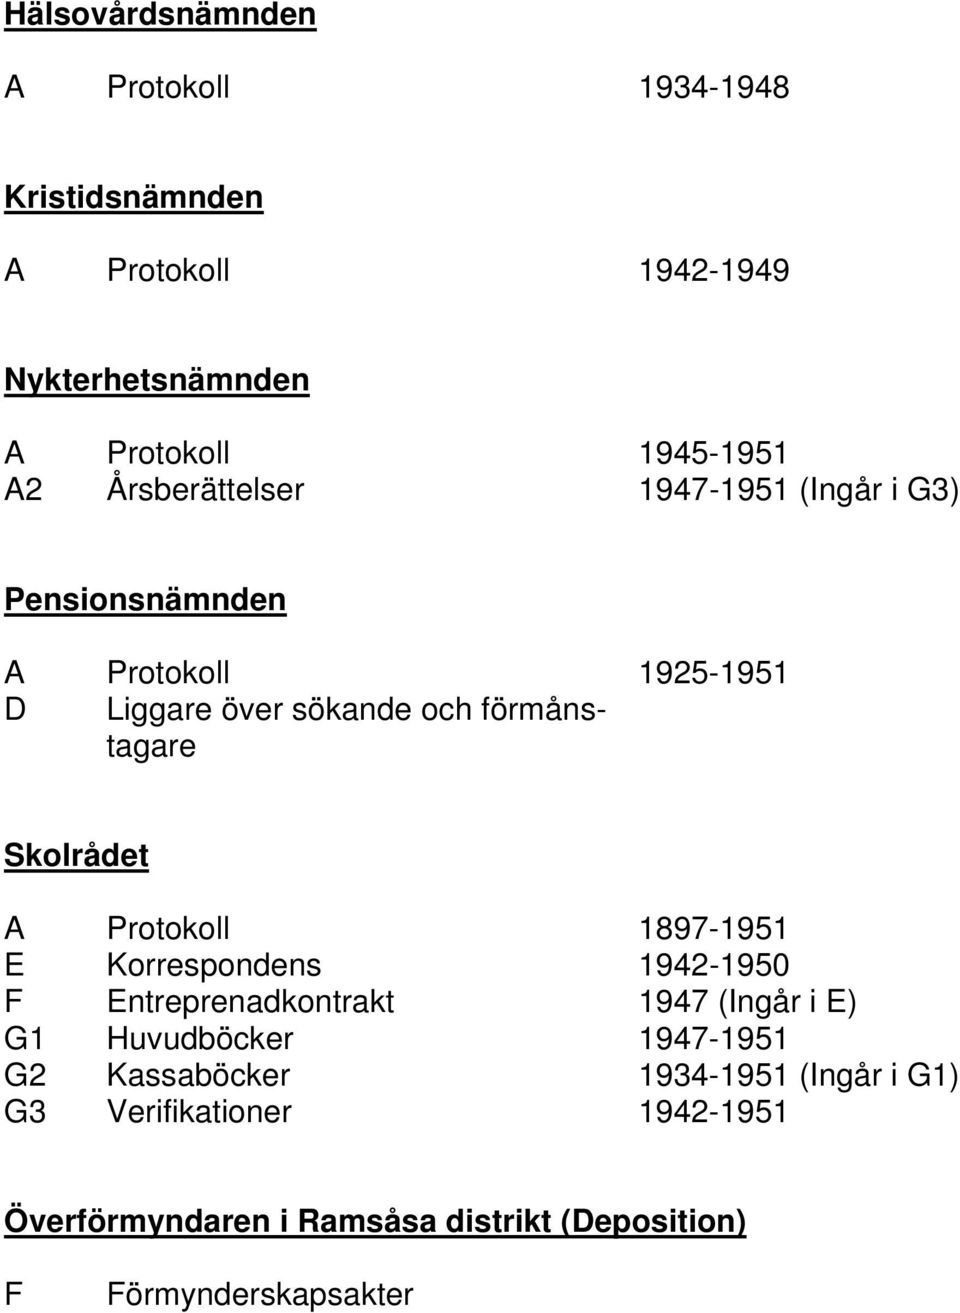 Skolrådet A Protokoll 1897-1951 E Korrespondens 1942-1950 F Entreprenadkontrakt 1947 (Ingår i E) G1 Huvudböcker 1947-1951